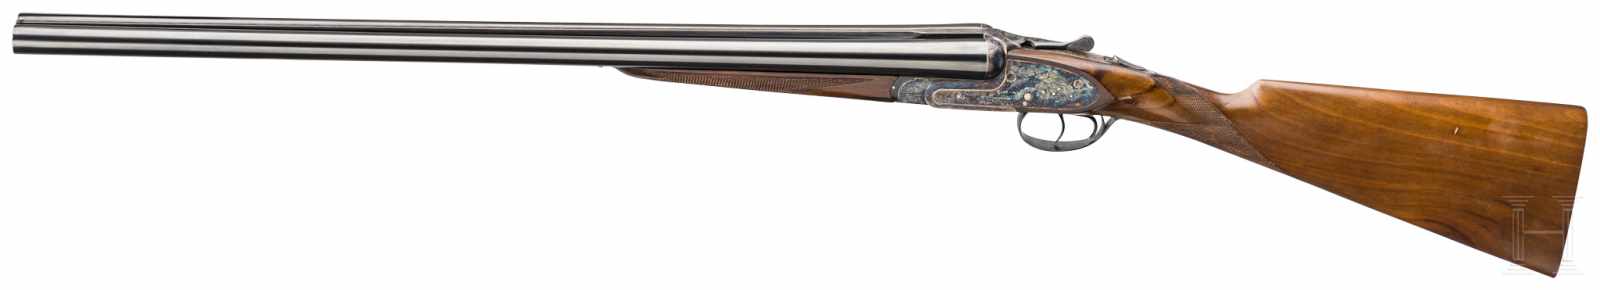 A side-by-side shotgun by Sarasqueta, Eibar - Image 2 of 3